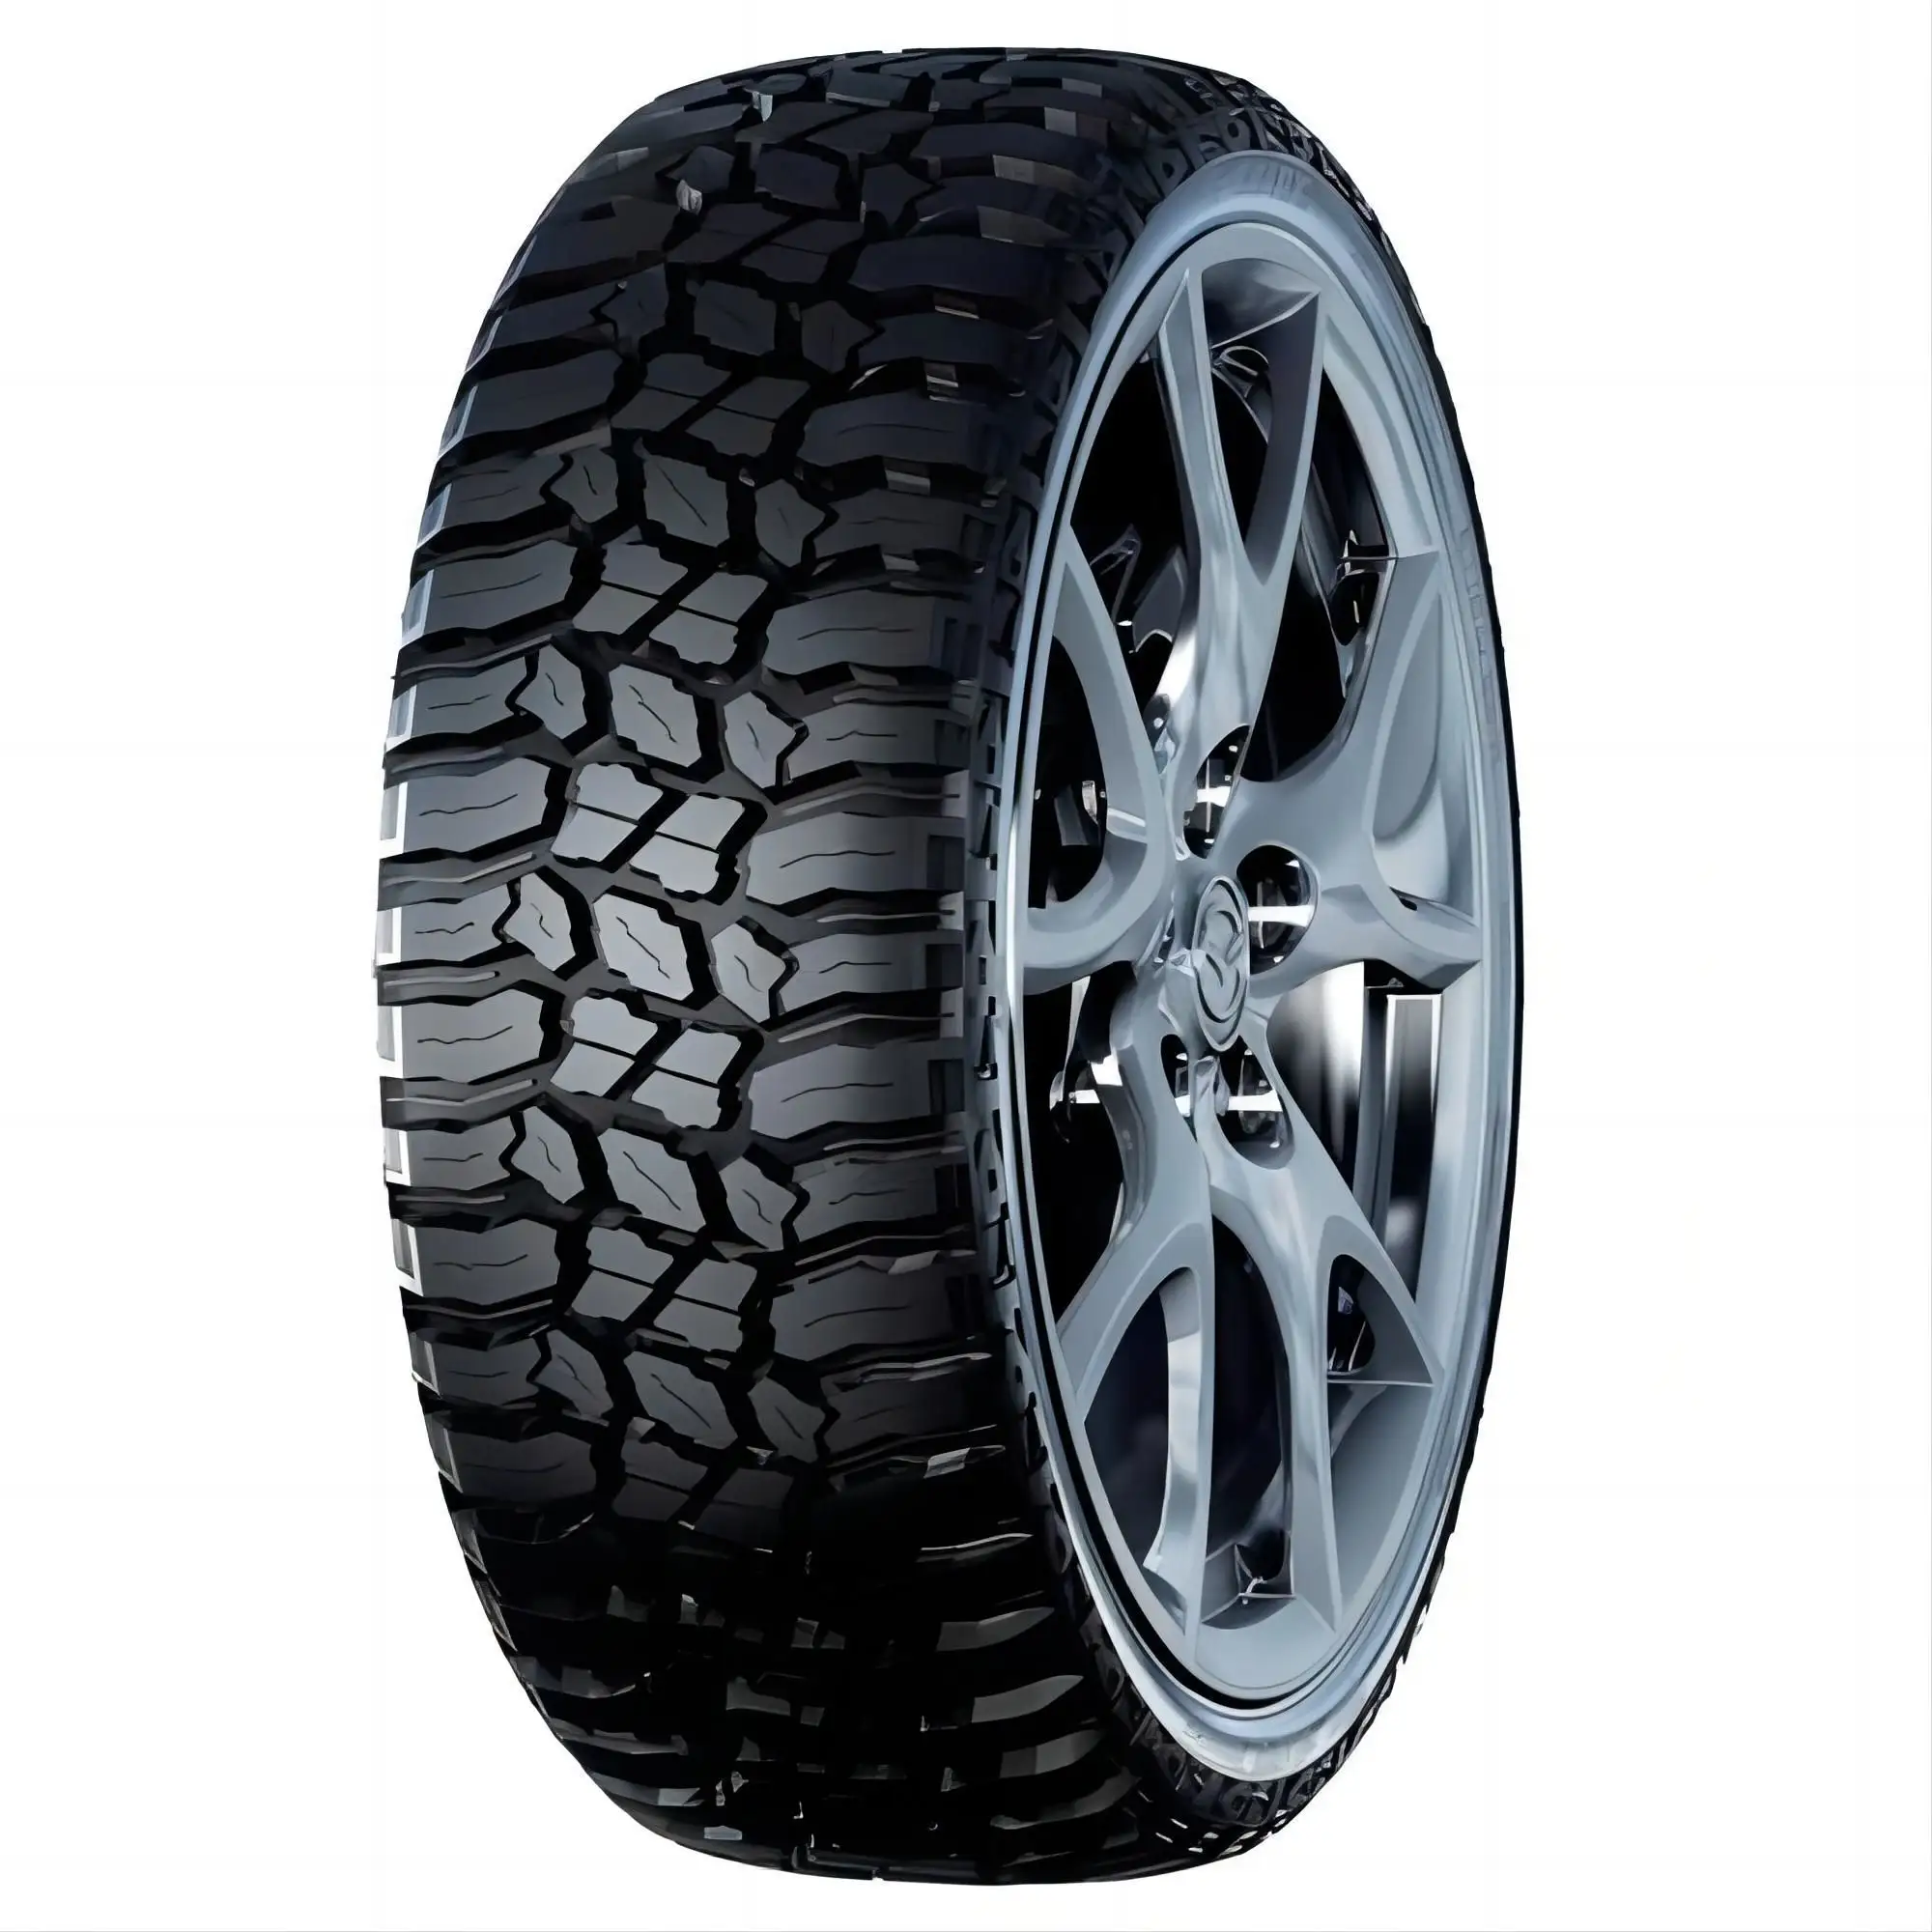 Neumáticos para terrenos de barro LT265/75R16 10PR, neumáticos todoterreno de alto rendimiento, fábrica china al mejor precio